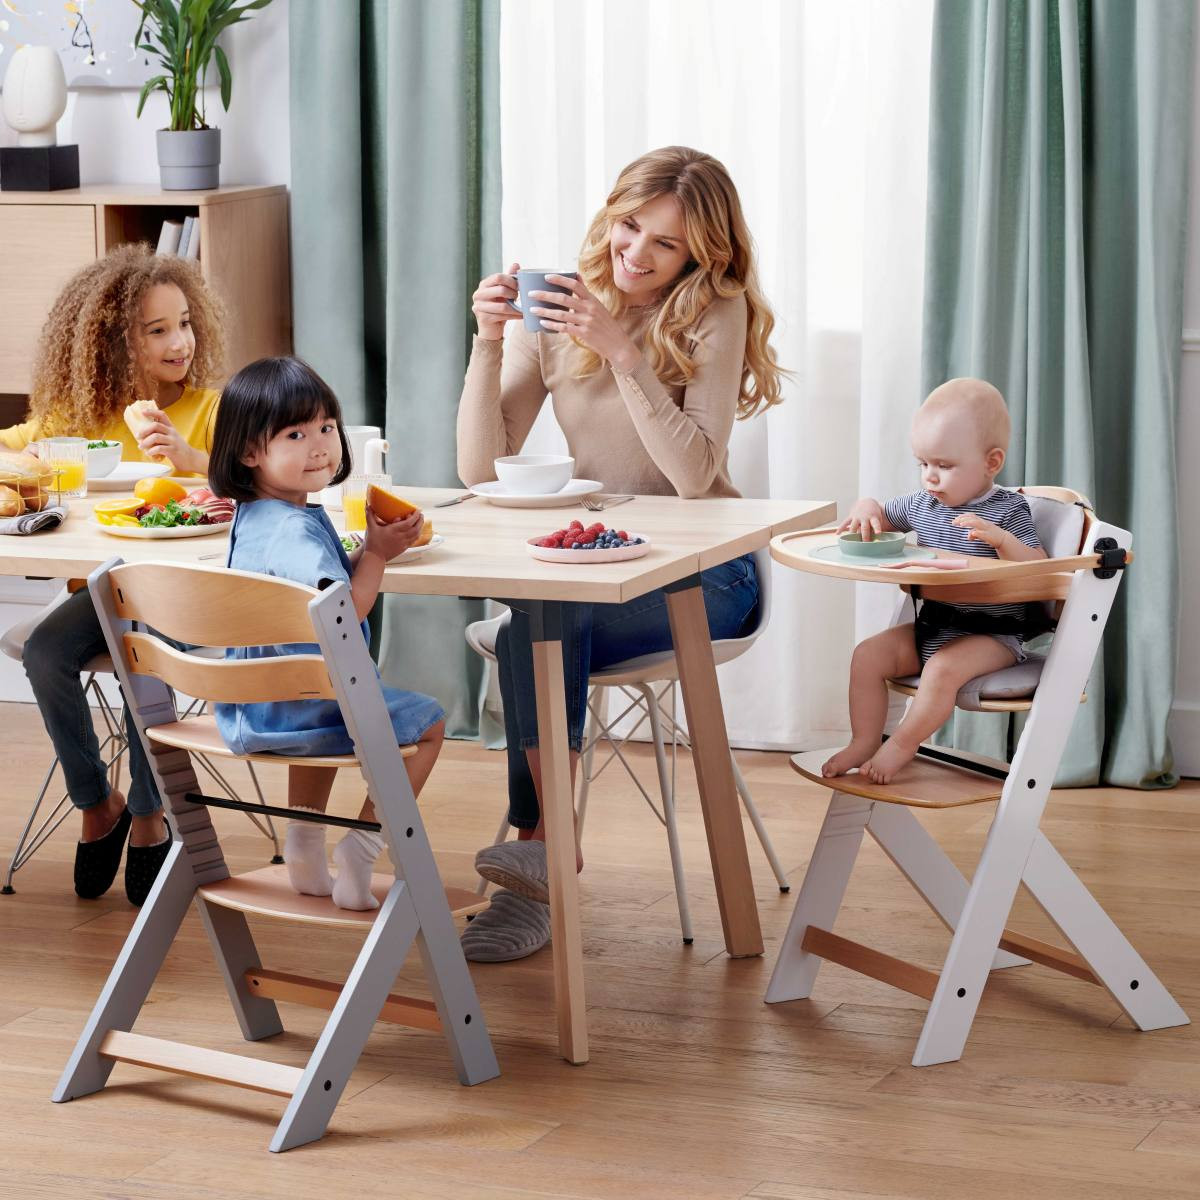 Famille heureuse mangeant autour d'une table en bois dont deux enfants sont assis sur des chaises Enock